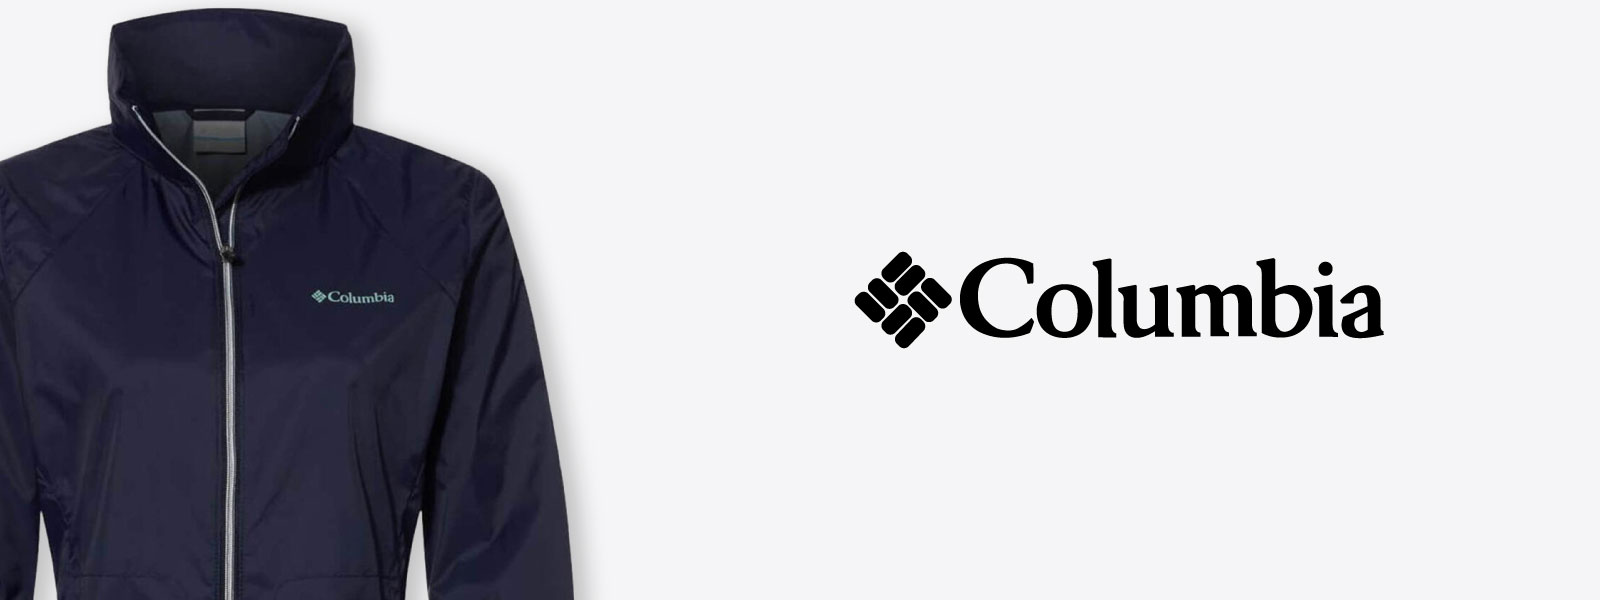 Custom Columbia. Custom Columbia Jacket. Company Jackets With Logo. Columbia Jackets For Women.